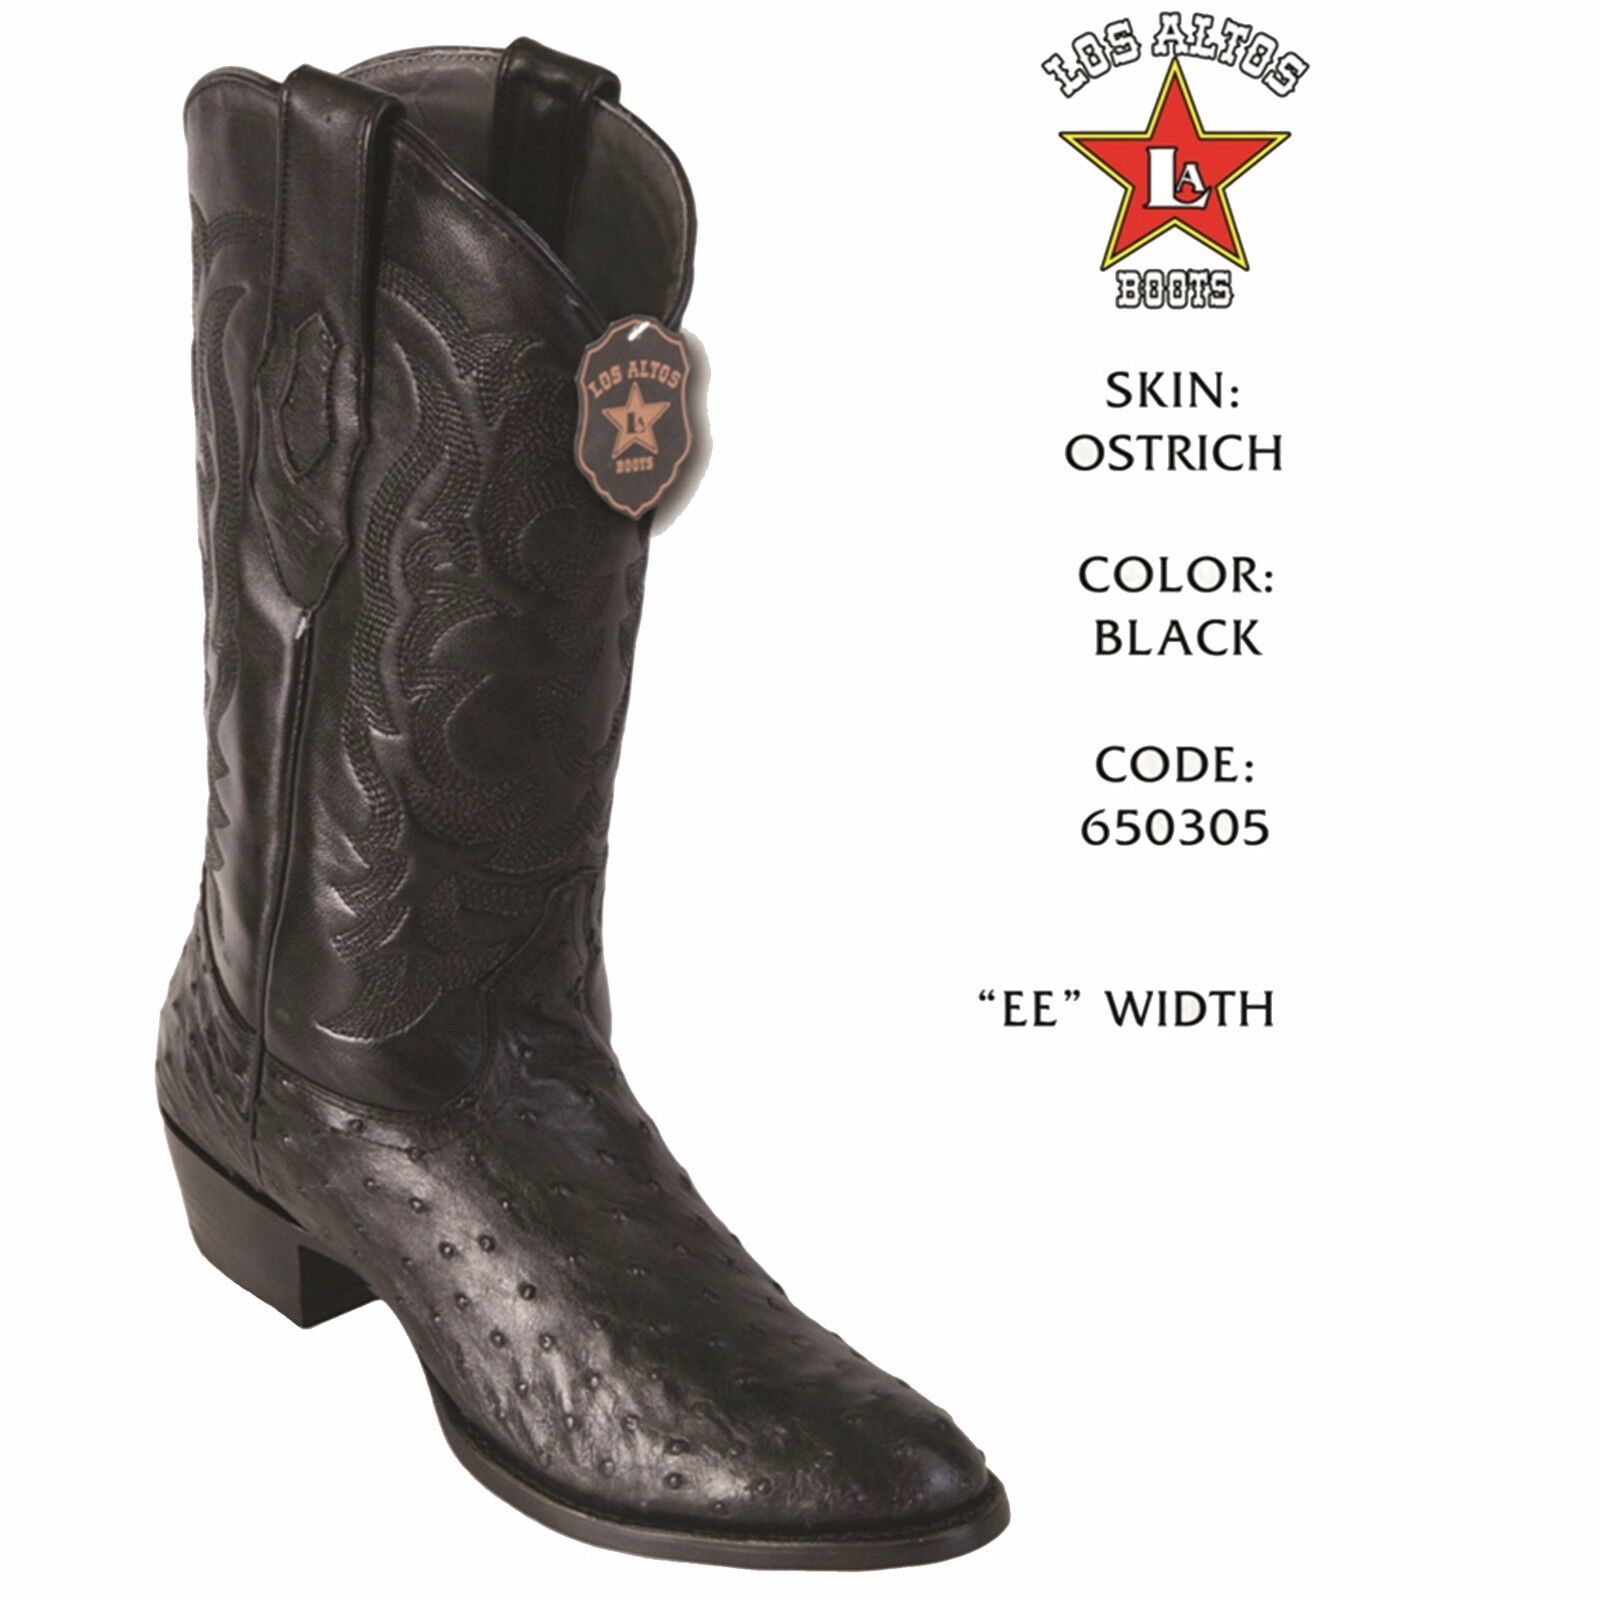 Pre-owned Los Altos Boots Los Altos, Western, Cowboy, Men's Ostrich, H-65 Round Toe Boot, See Note In Black 650305